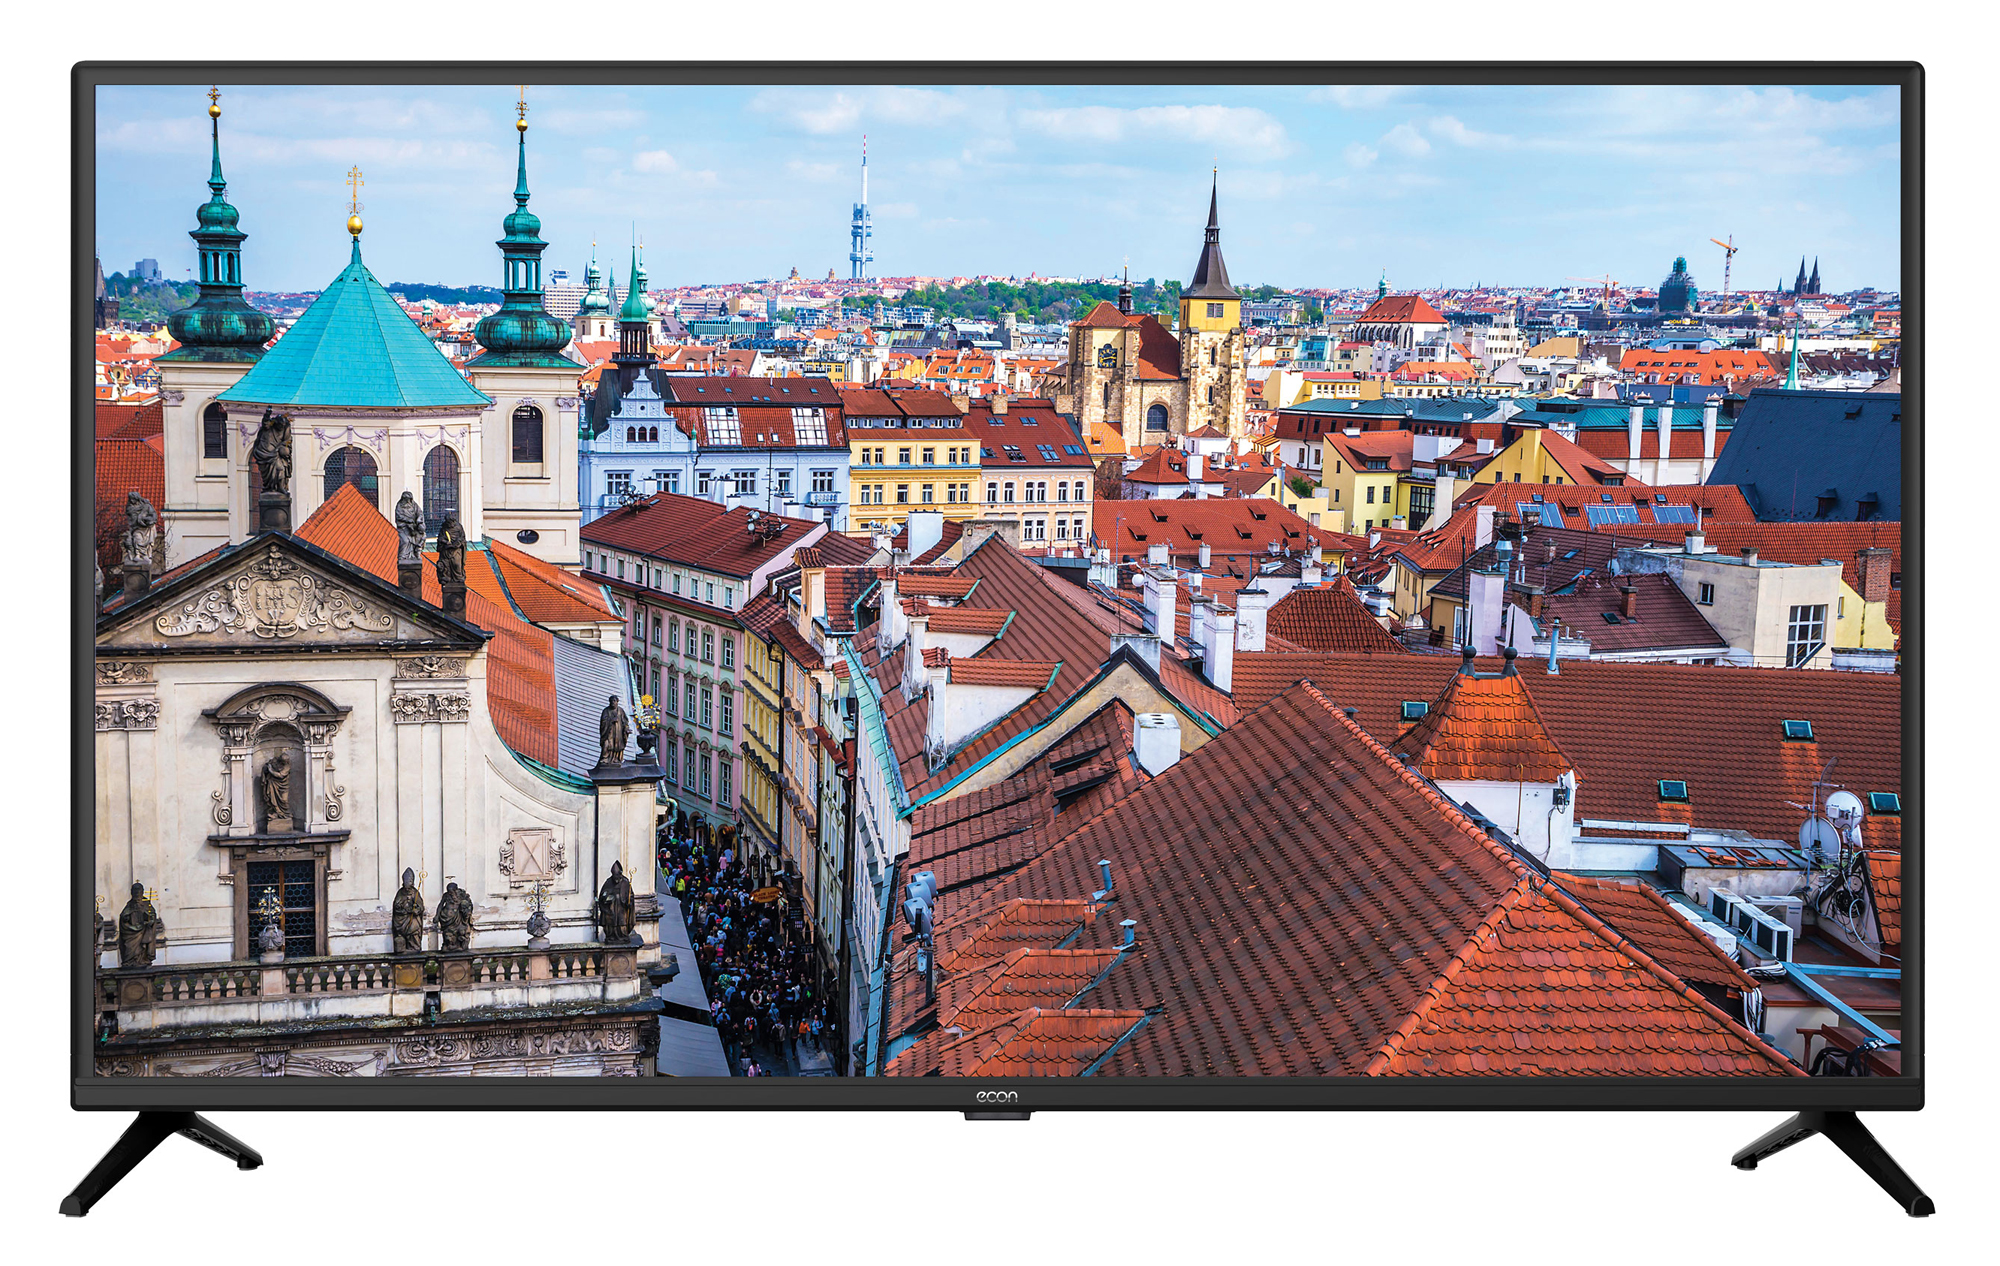 Картинка Smart телевизор ECON EX-43FS002B по разумной цене купить в интернет магазине mall.su